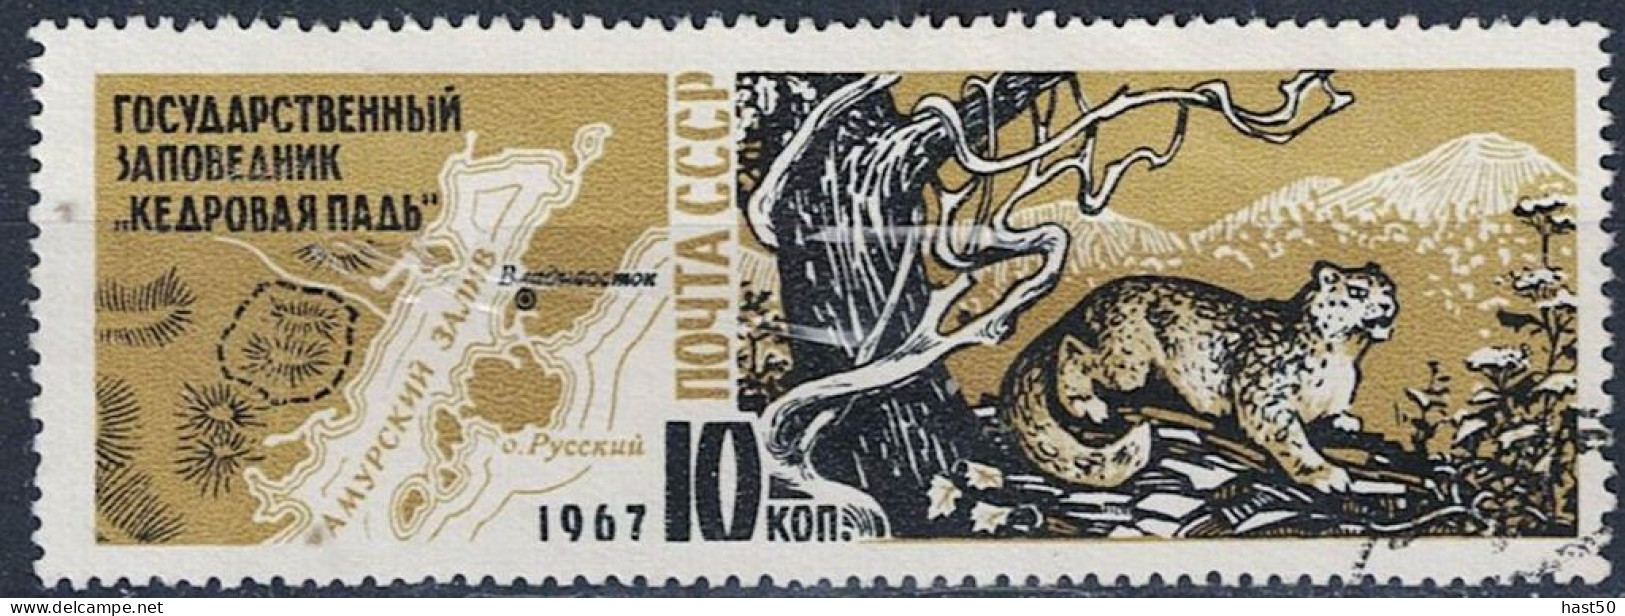 Sowjetunion UdSSR - Schneeleopard (Panthera Uncia) Vor Gebirgslandschaft (MiNr. 3400) 1967 - Gest Used Obl - Used Stamps